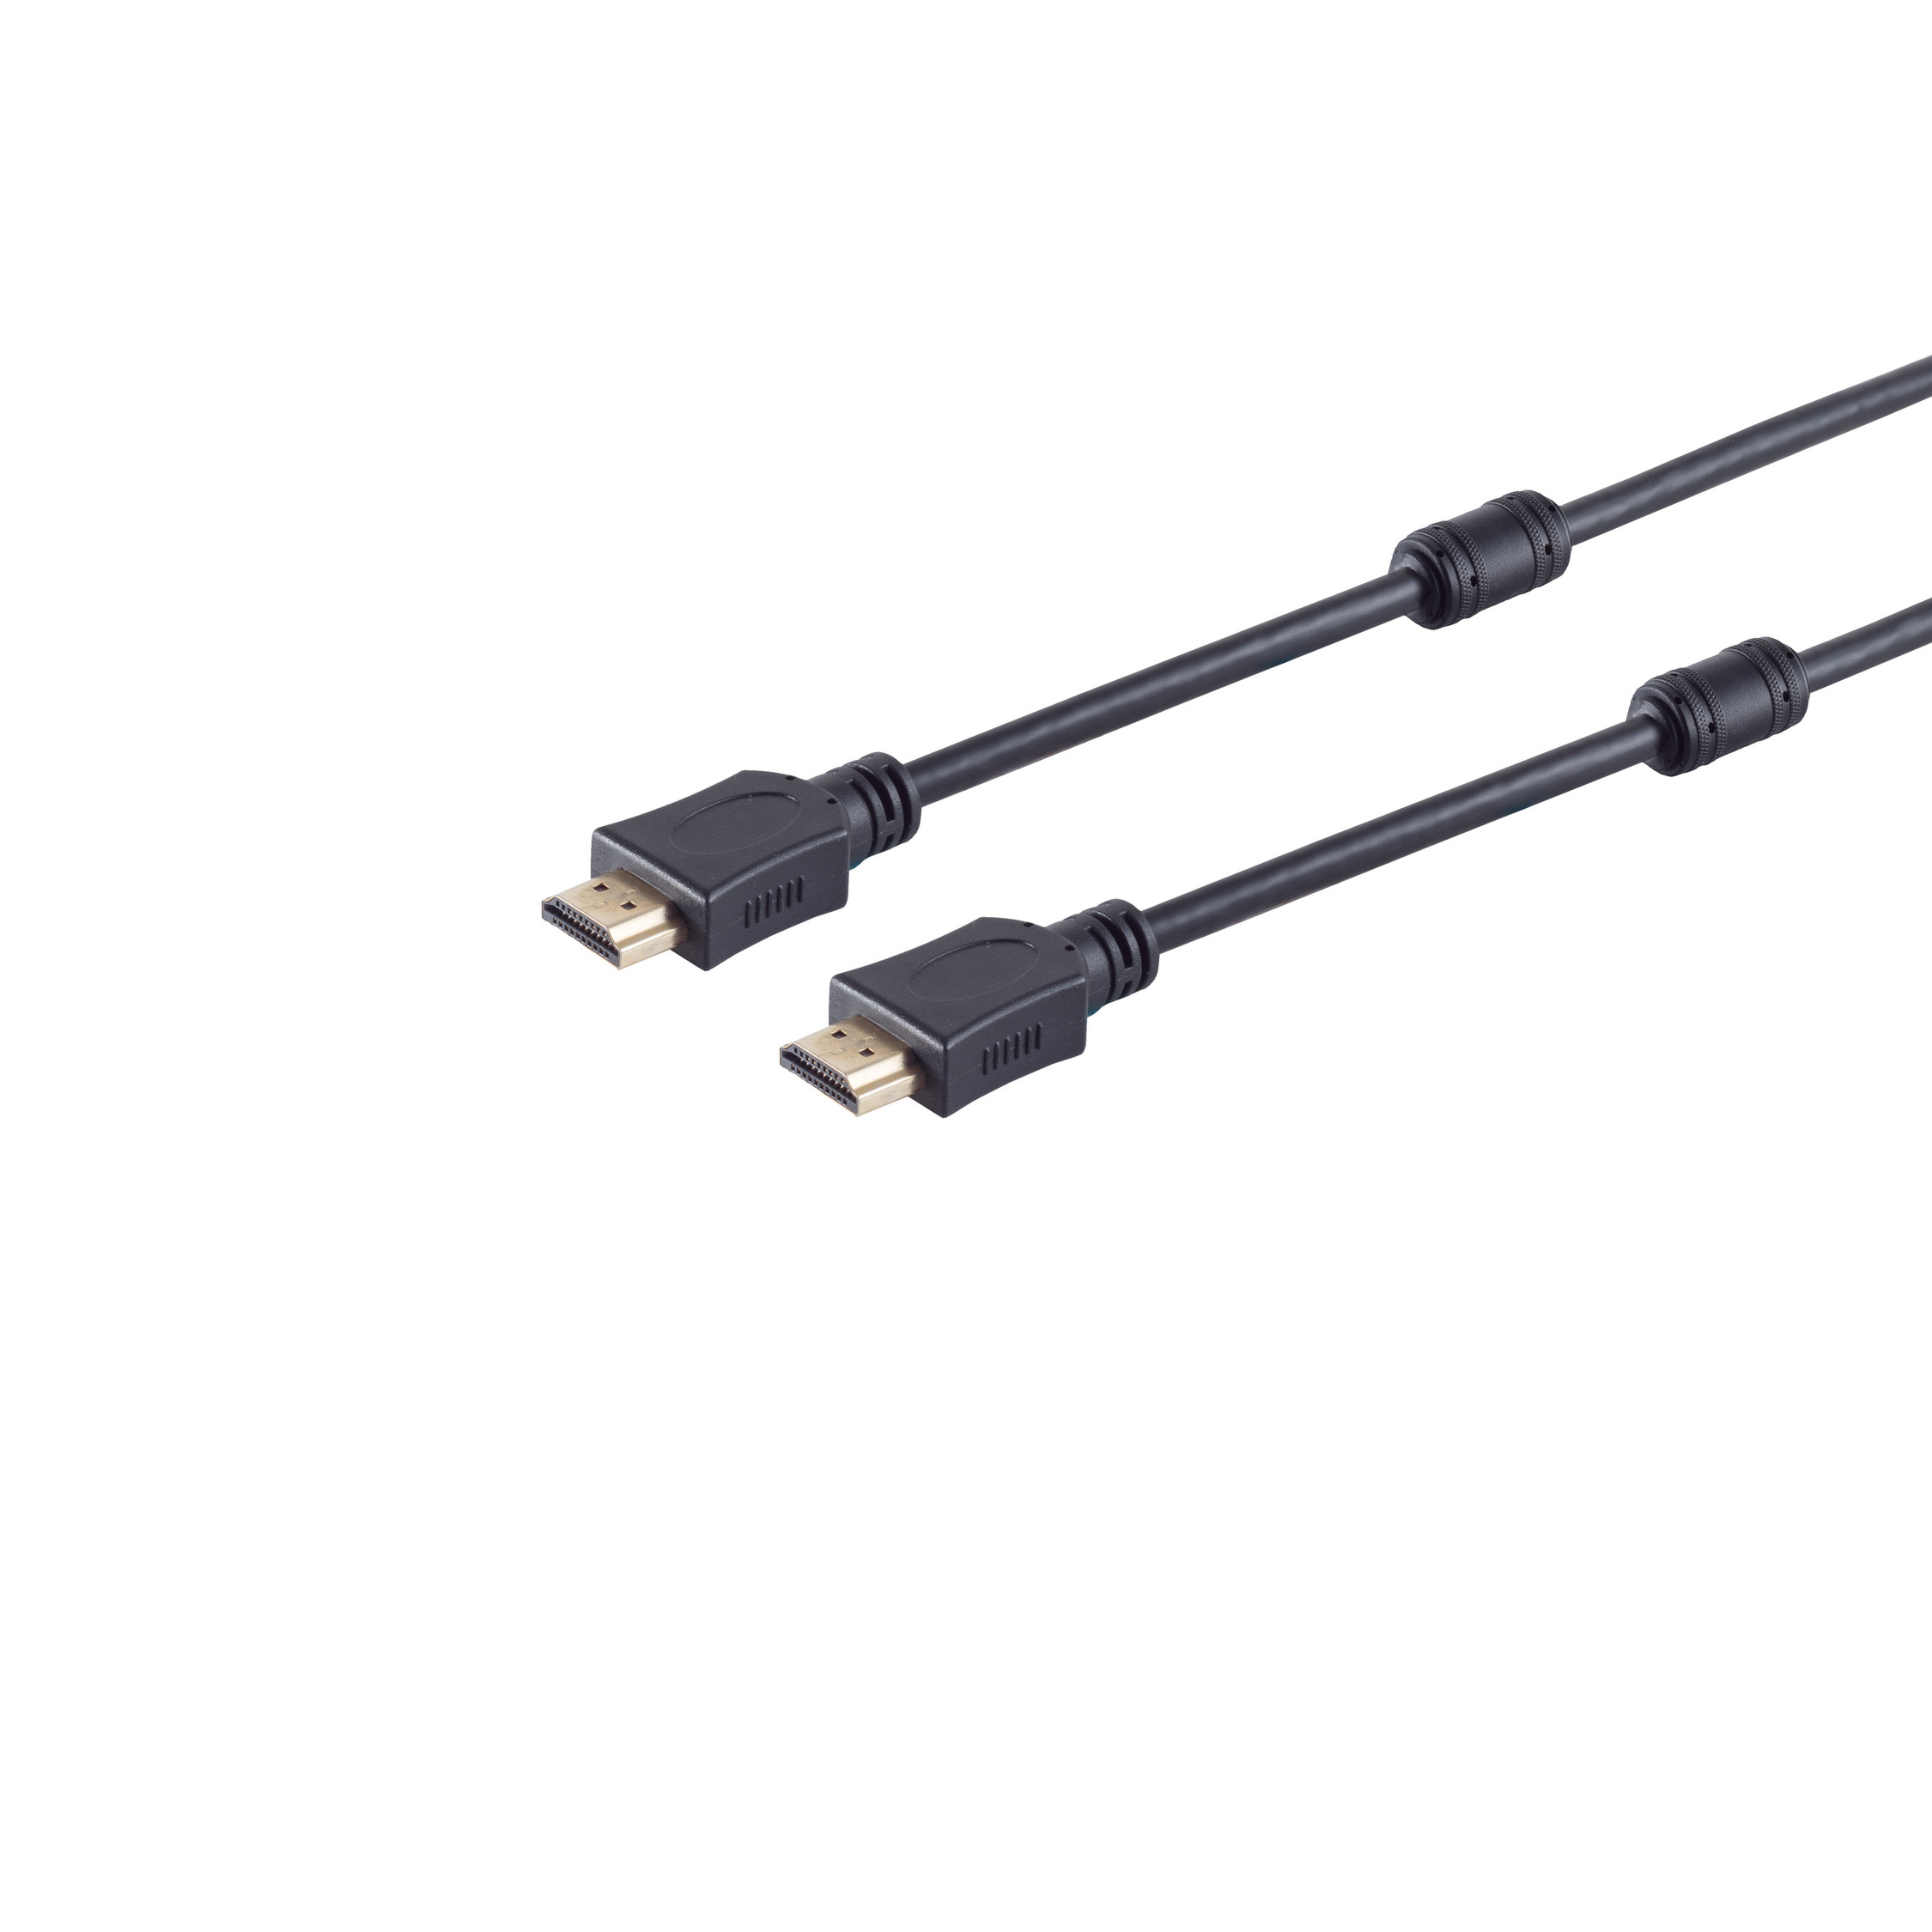 A-Stecker/HDMI Kabel A-Stecker HDMI HDMI S/CONN HEAC CONNECTIVITY Ferrit 2m MAXIMUM verg